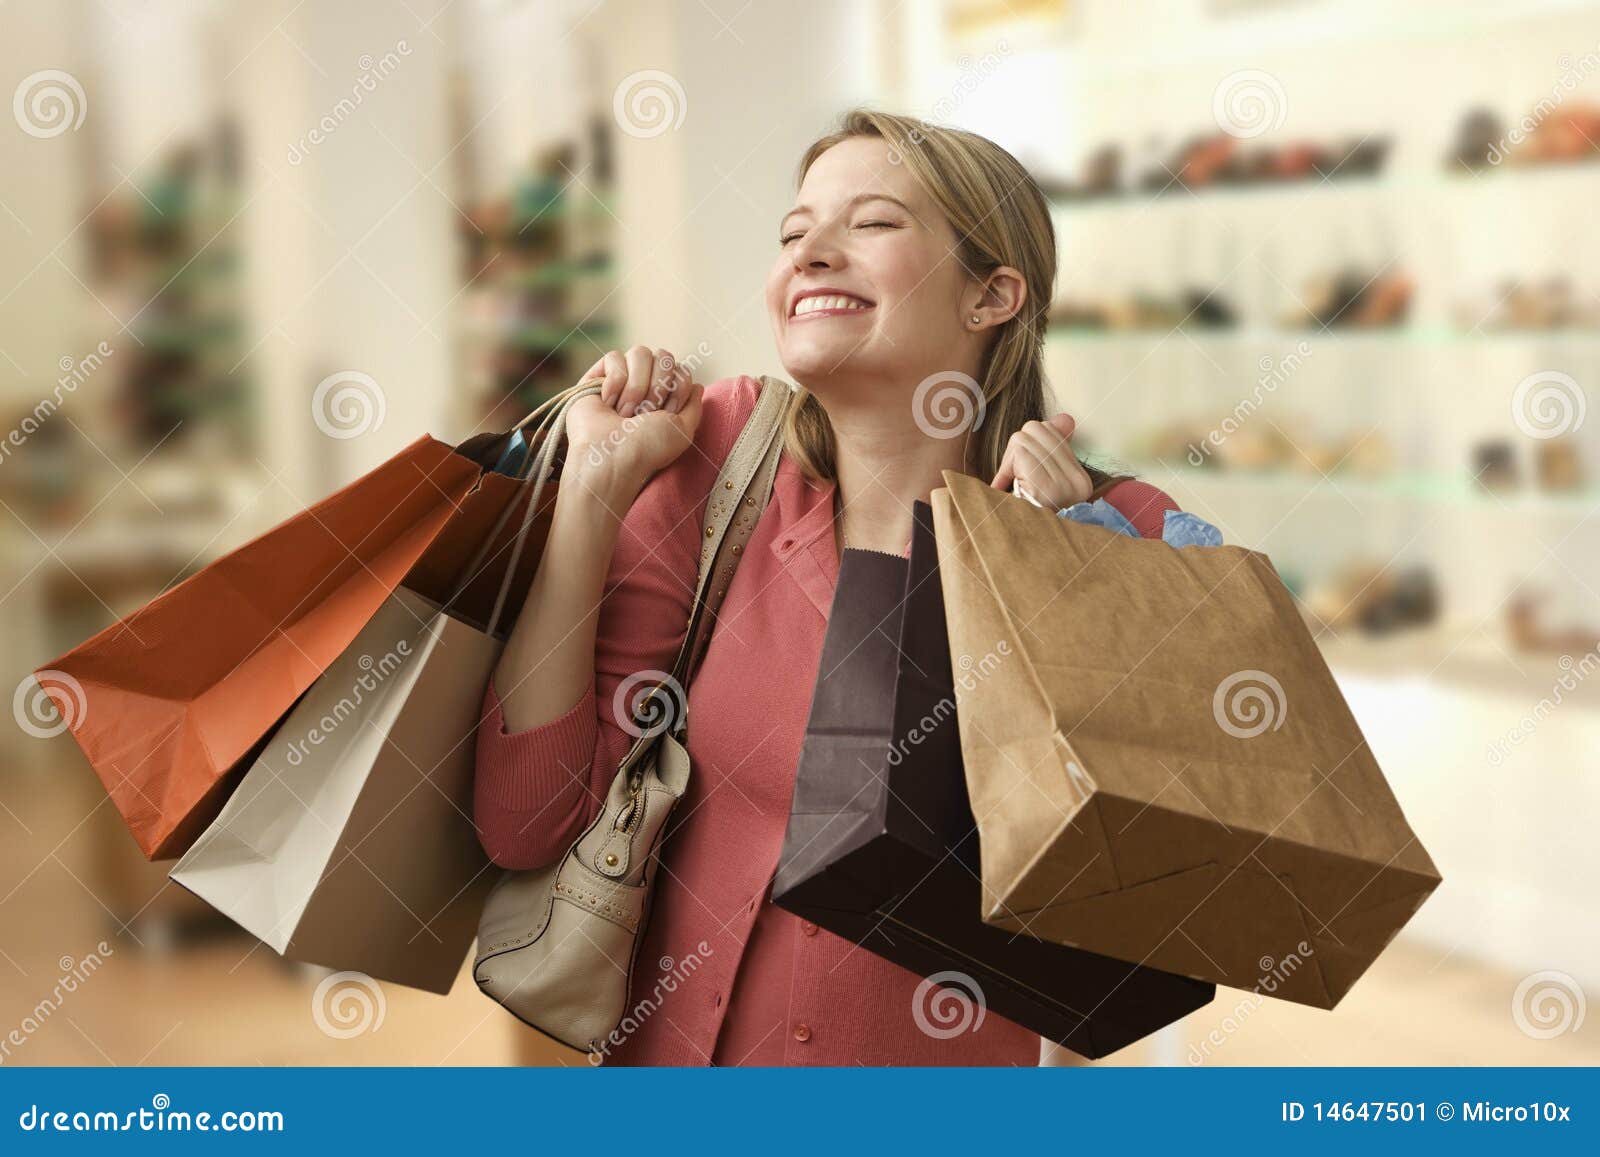 woman carrying shopping bags